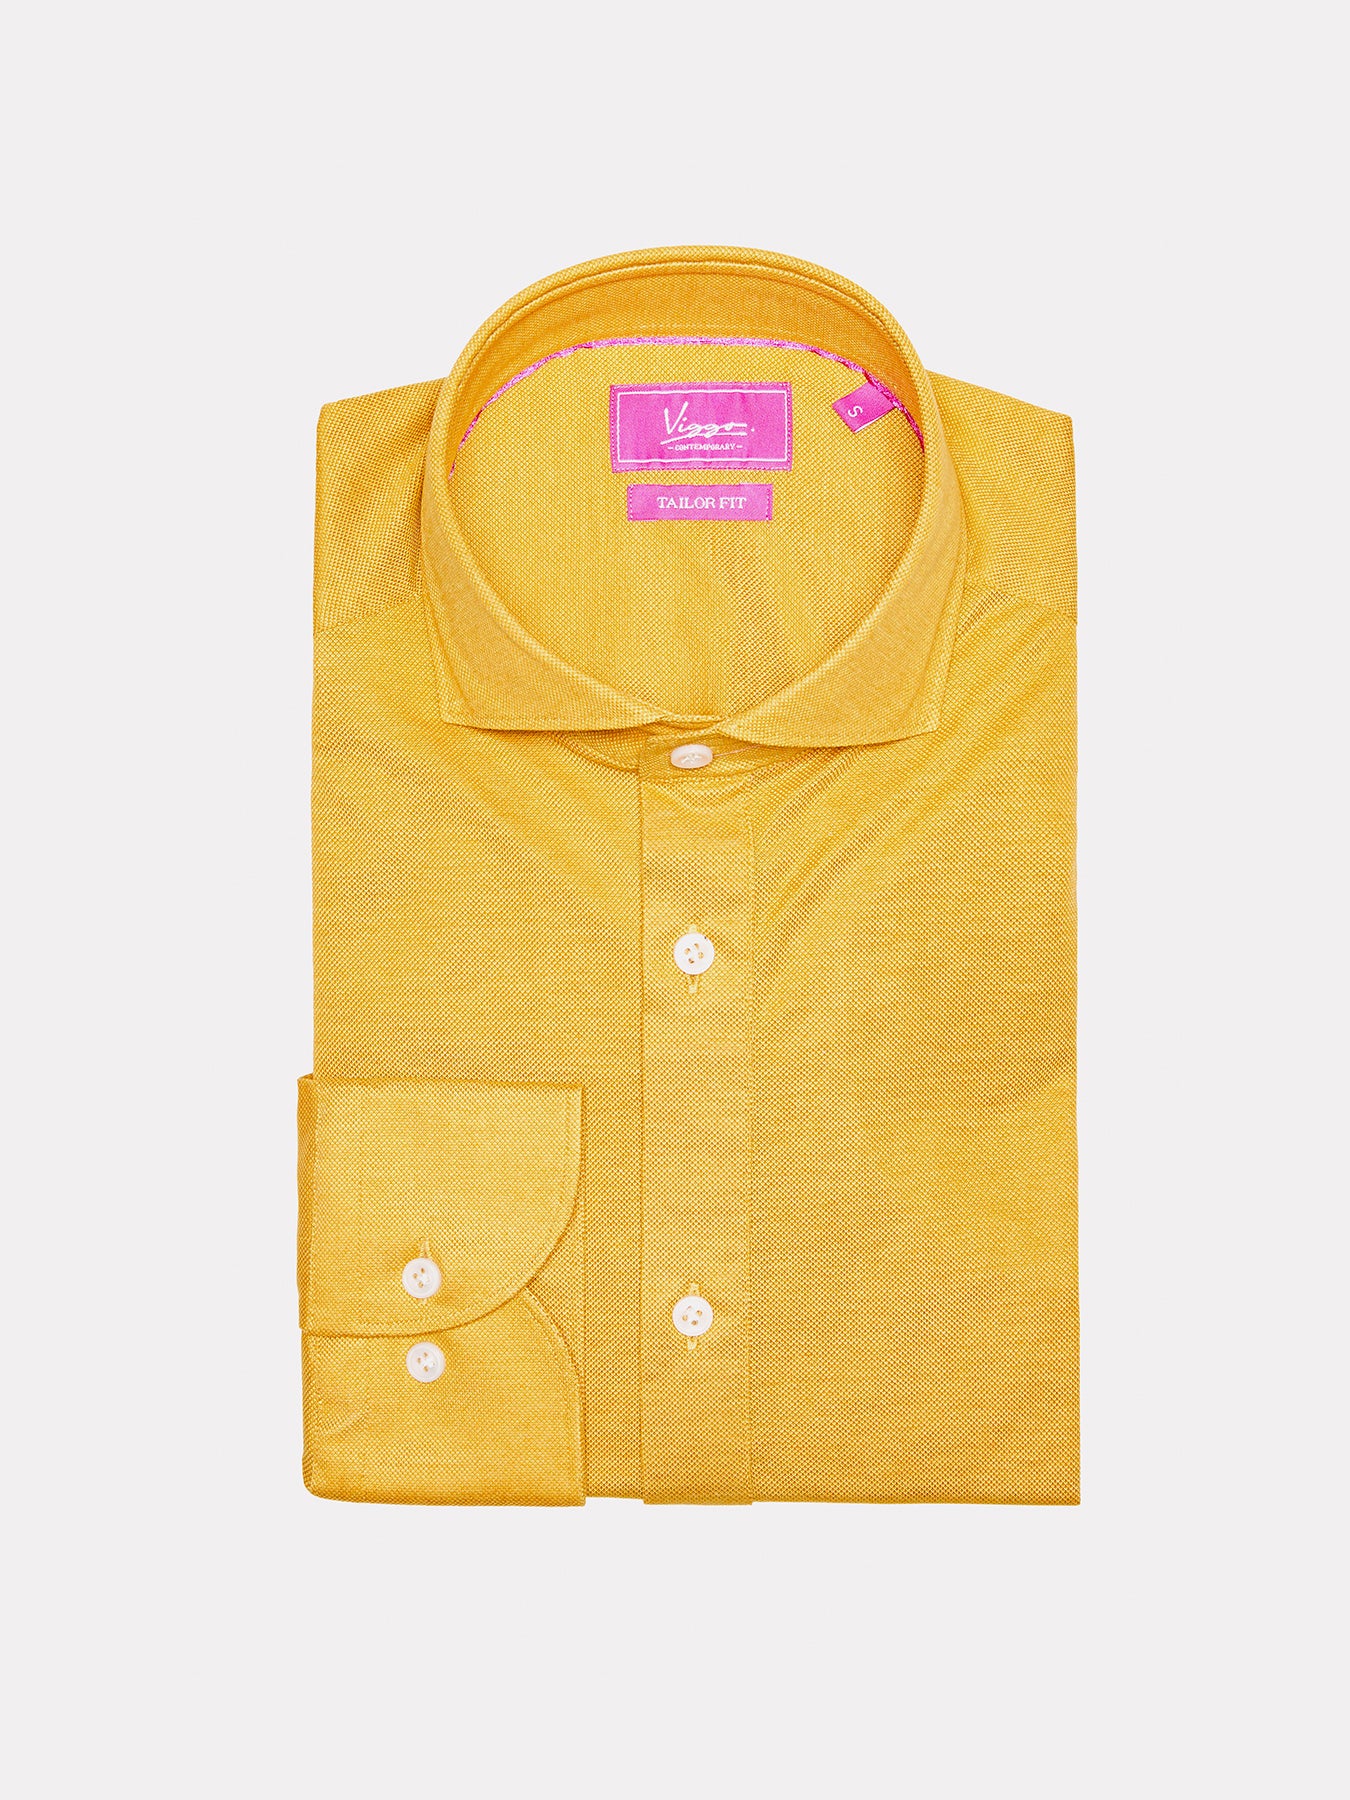 Mustard yellow popover shirt